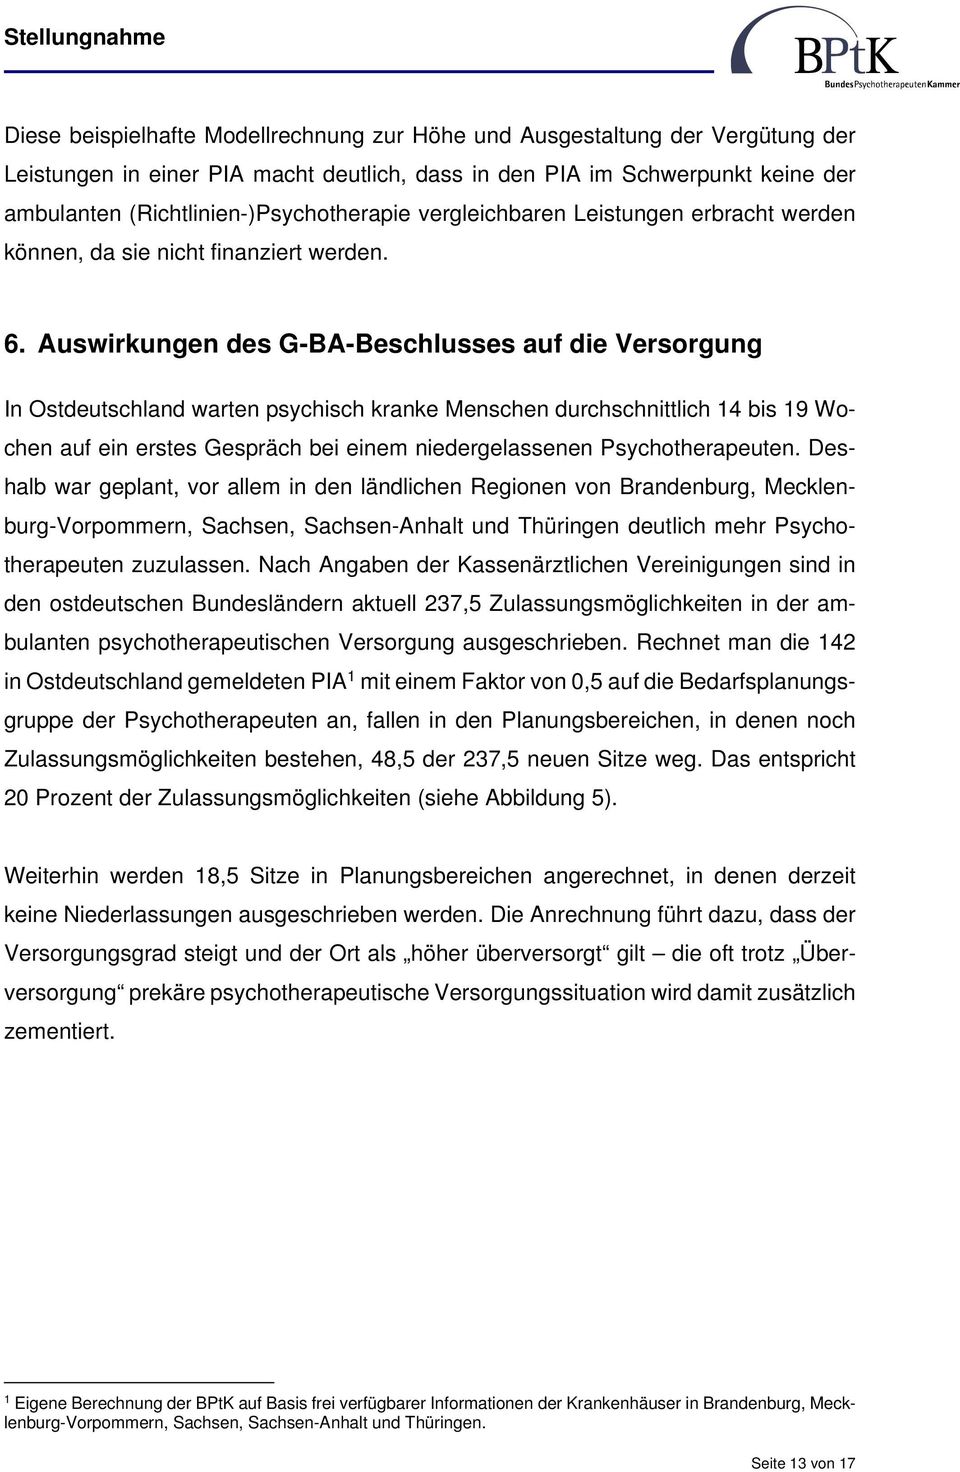 Auswirkungen des G-BA-Beschlusses auf die Versorgung In Ostdeutschland warten psychisch kranke Menschen durchschnittlich 14 bis 19 Wochen auf ein erstes Gespräch bei einem niedergelassenen